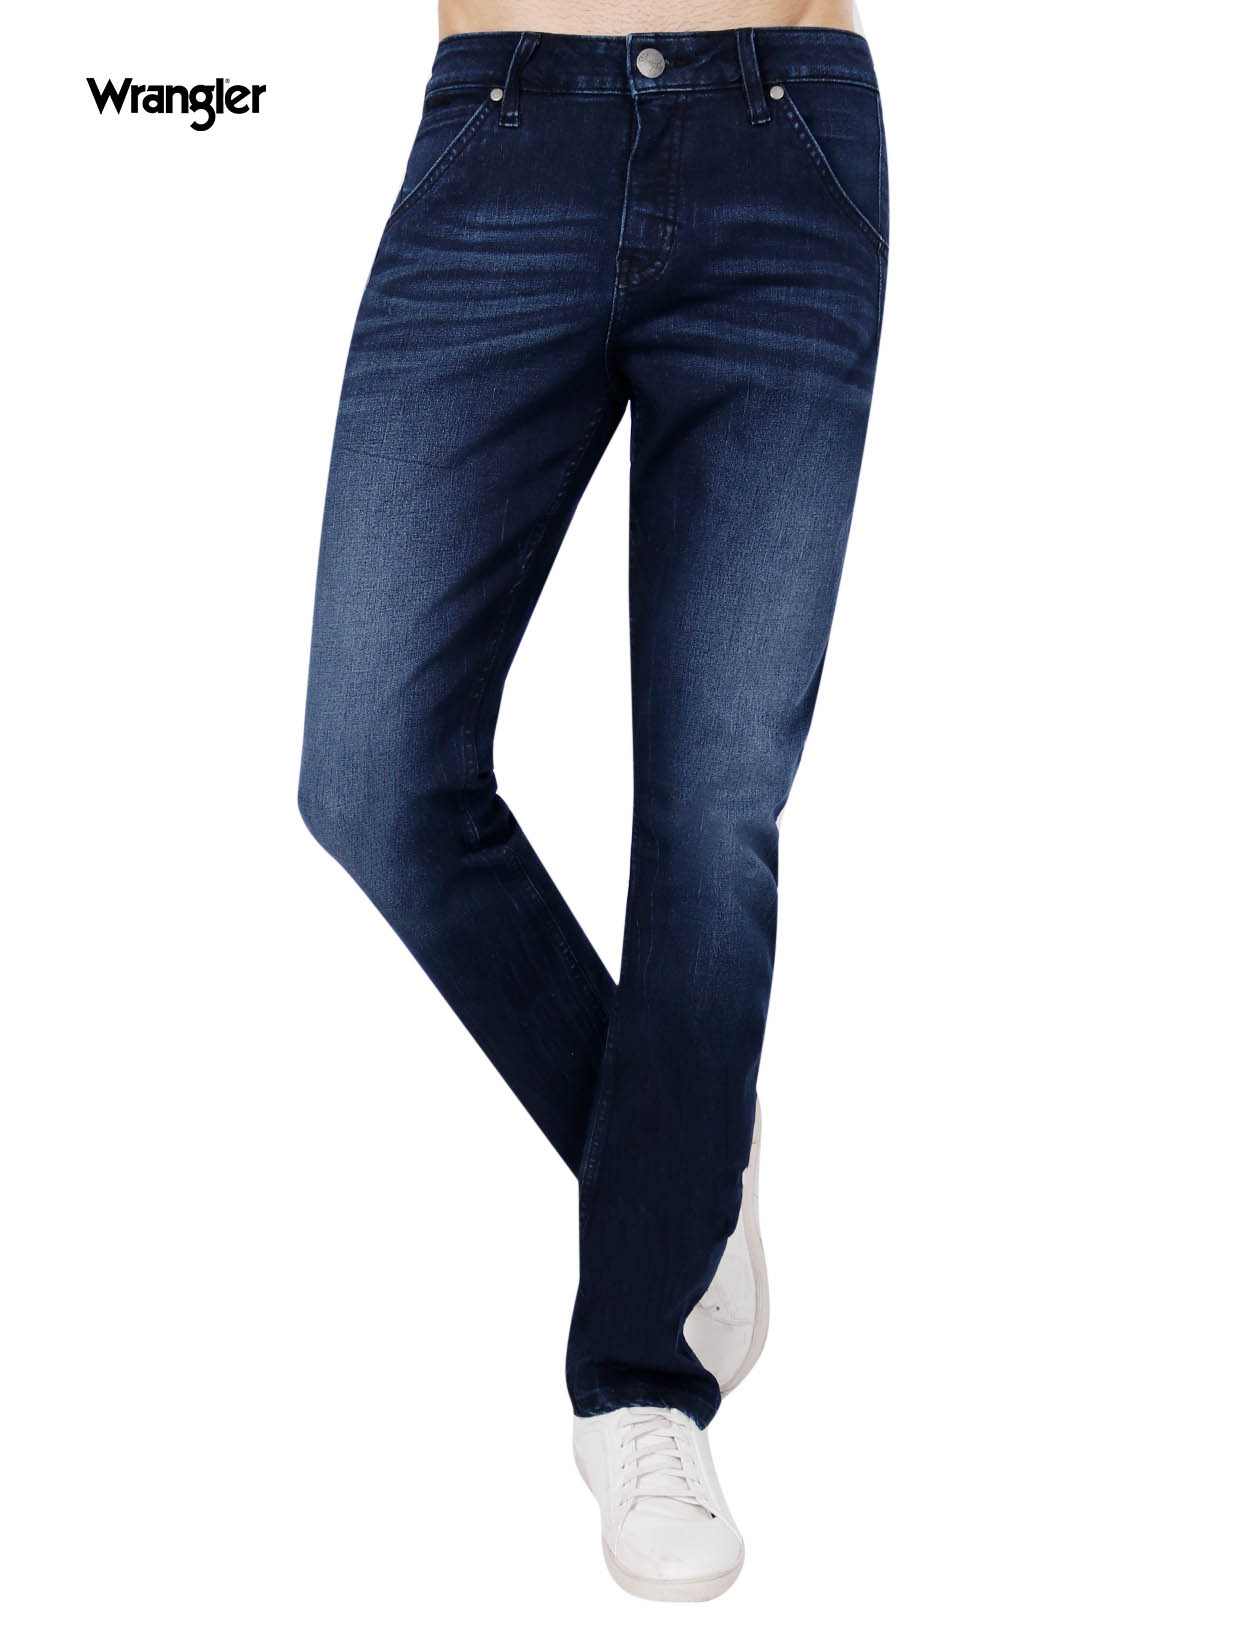 wrangler spencer jeans black